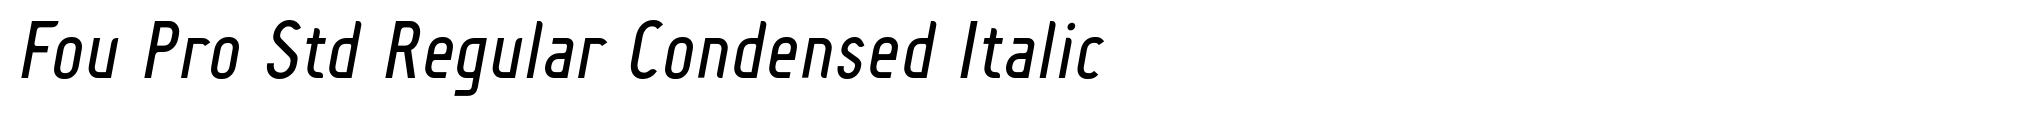 Fou Pro Std Regular Condensed Italic image